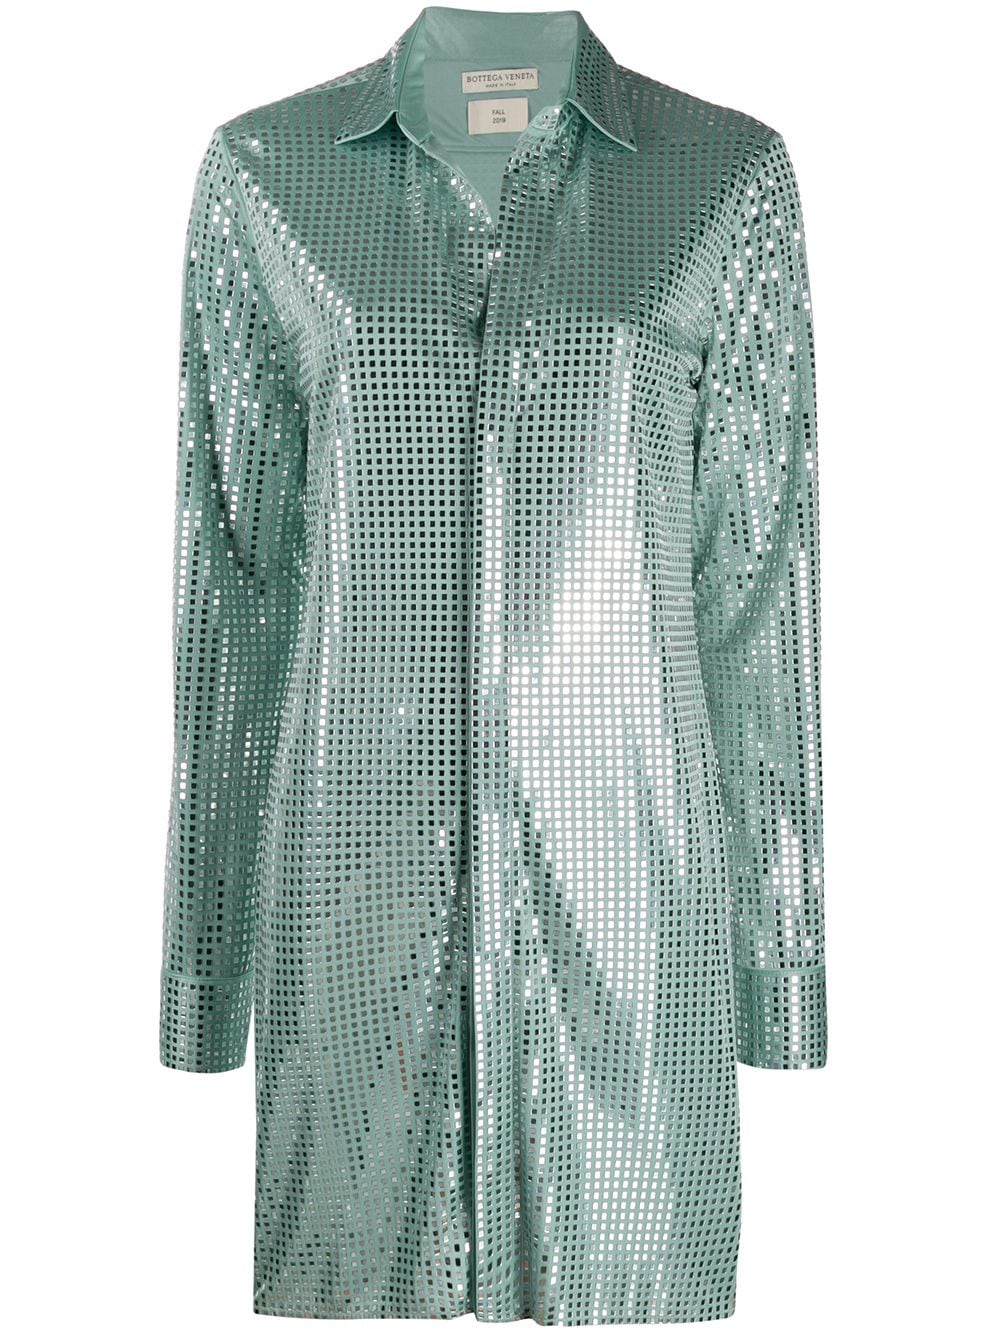 фото Bottega veneta удлиненная рубашка с пайетками